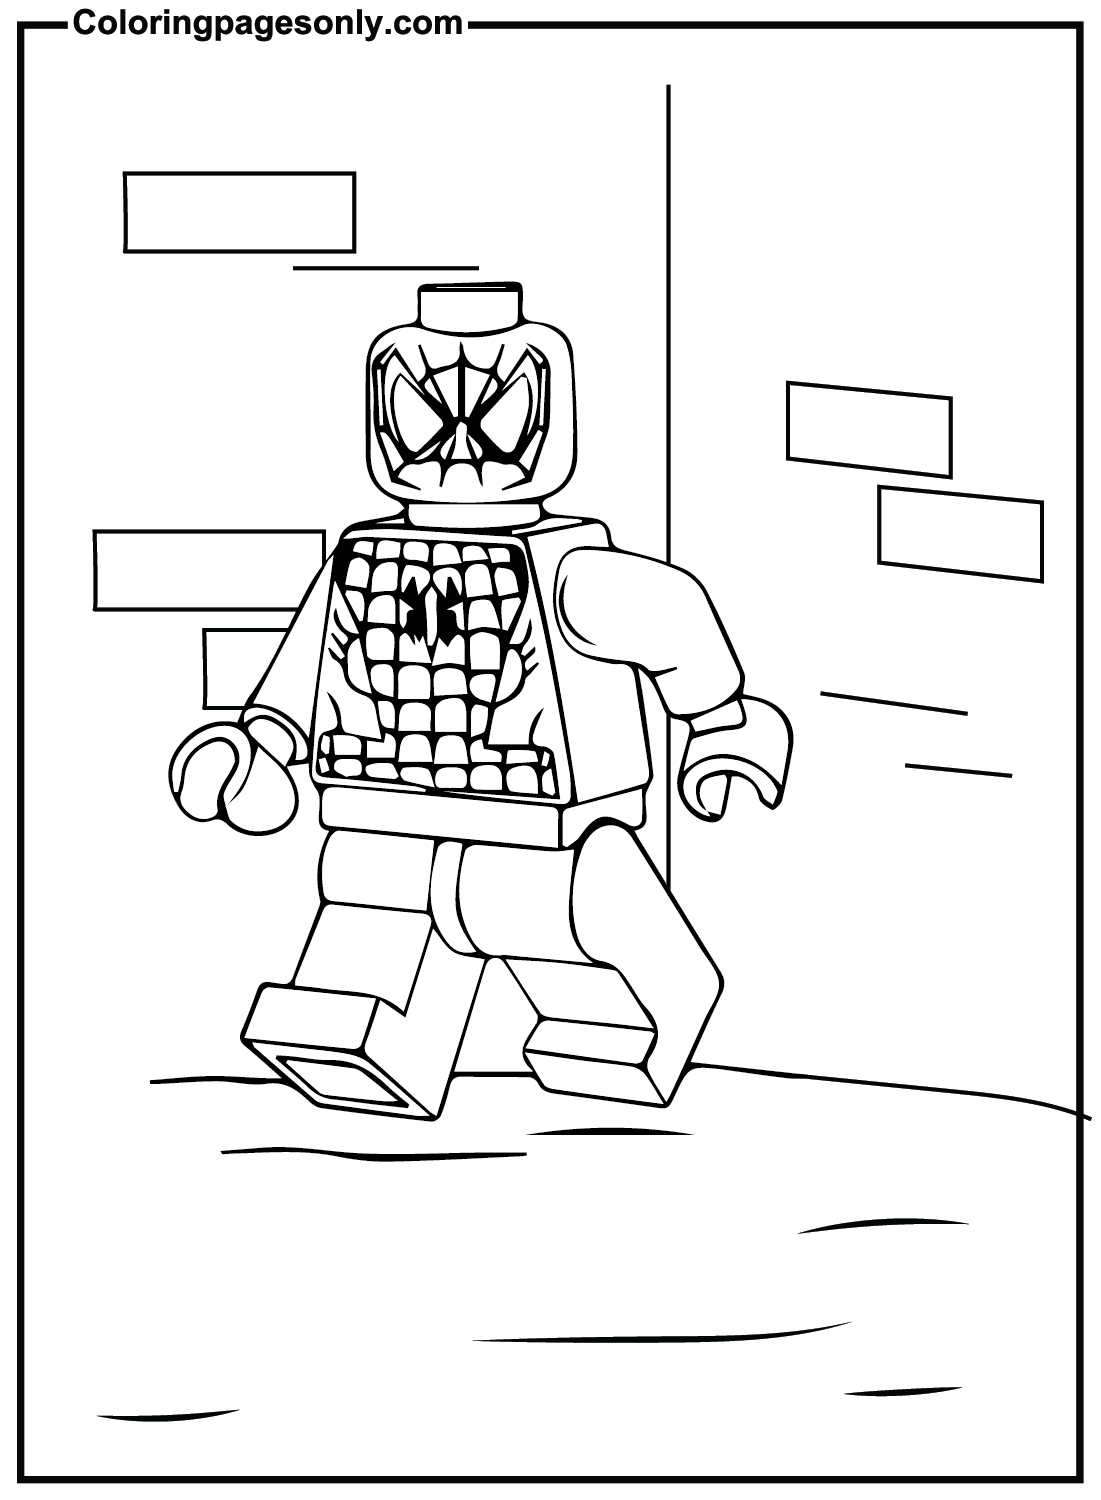 Imagens do Homem-Aranha Lego do Homem-Aranha Lego